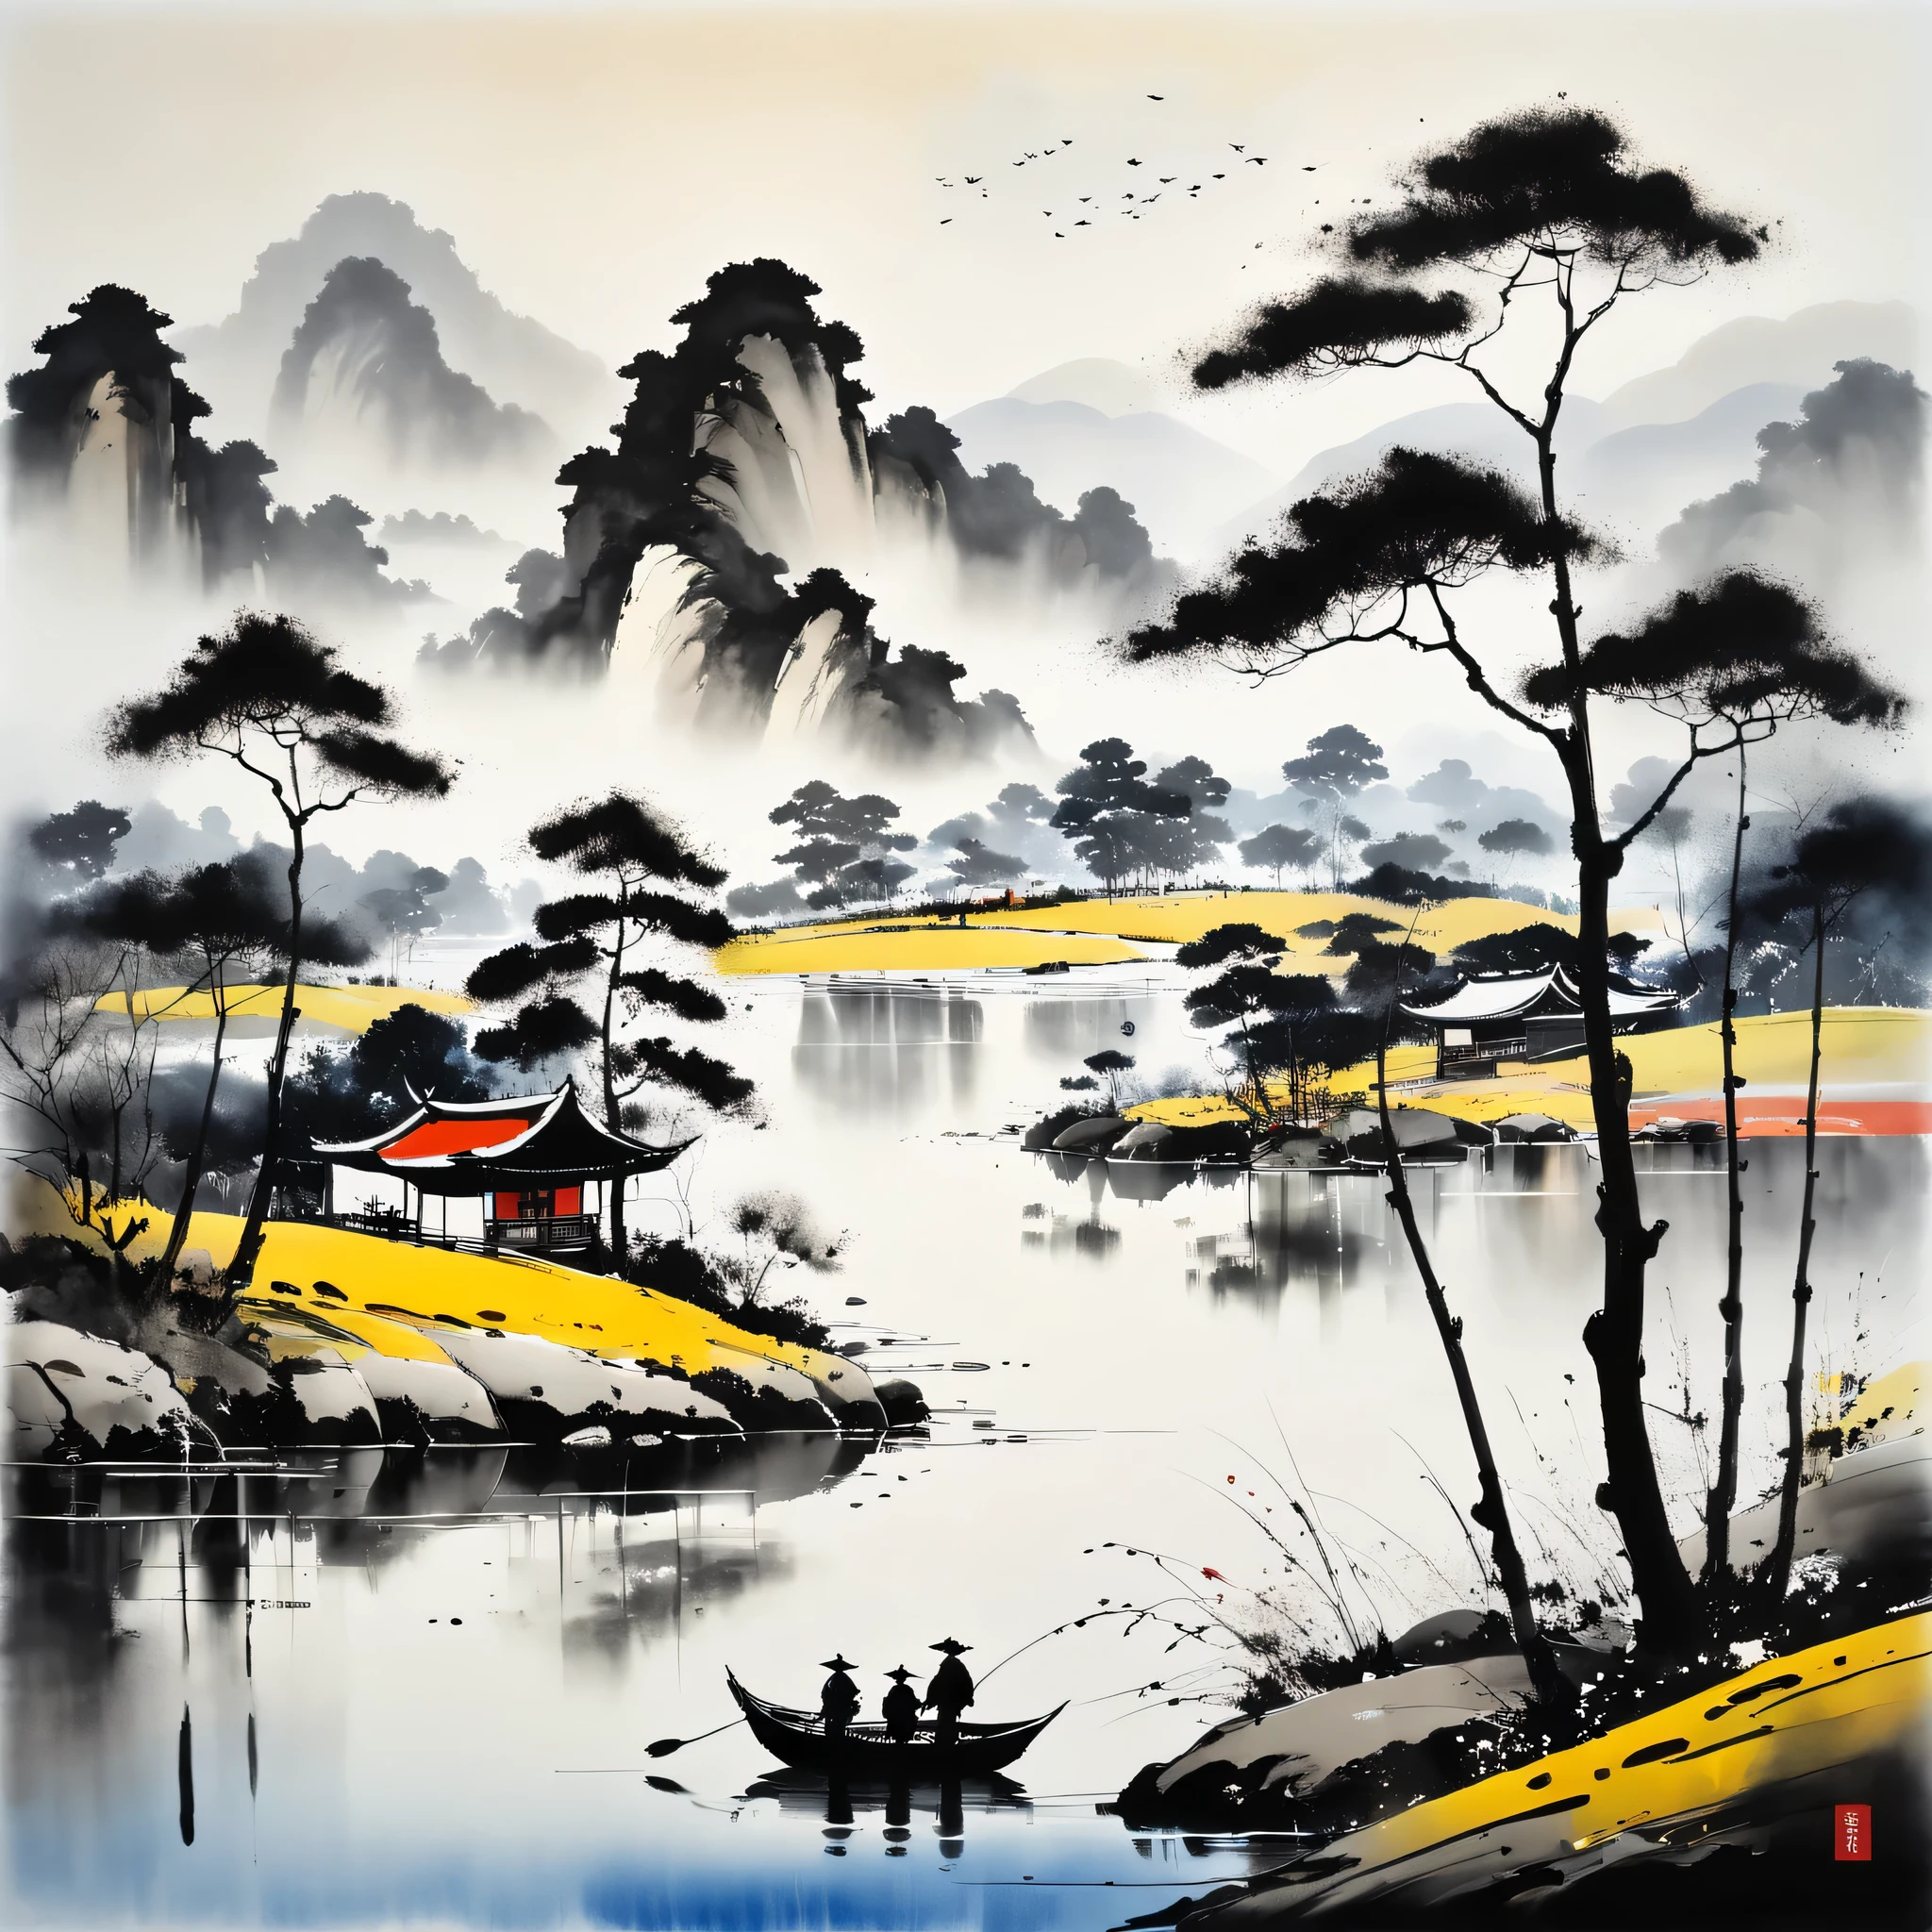 (وو كانزونغ&#39;أسلوب الرسم), مزيج من تقنيات الرسم بالحبر ومفاهيم الرسم الغربية, (البحيرة والأشجار々رسم المناظر الطبيعية مع,